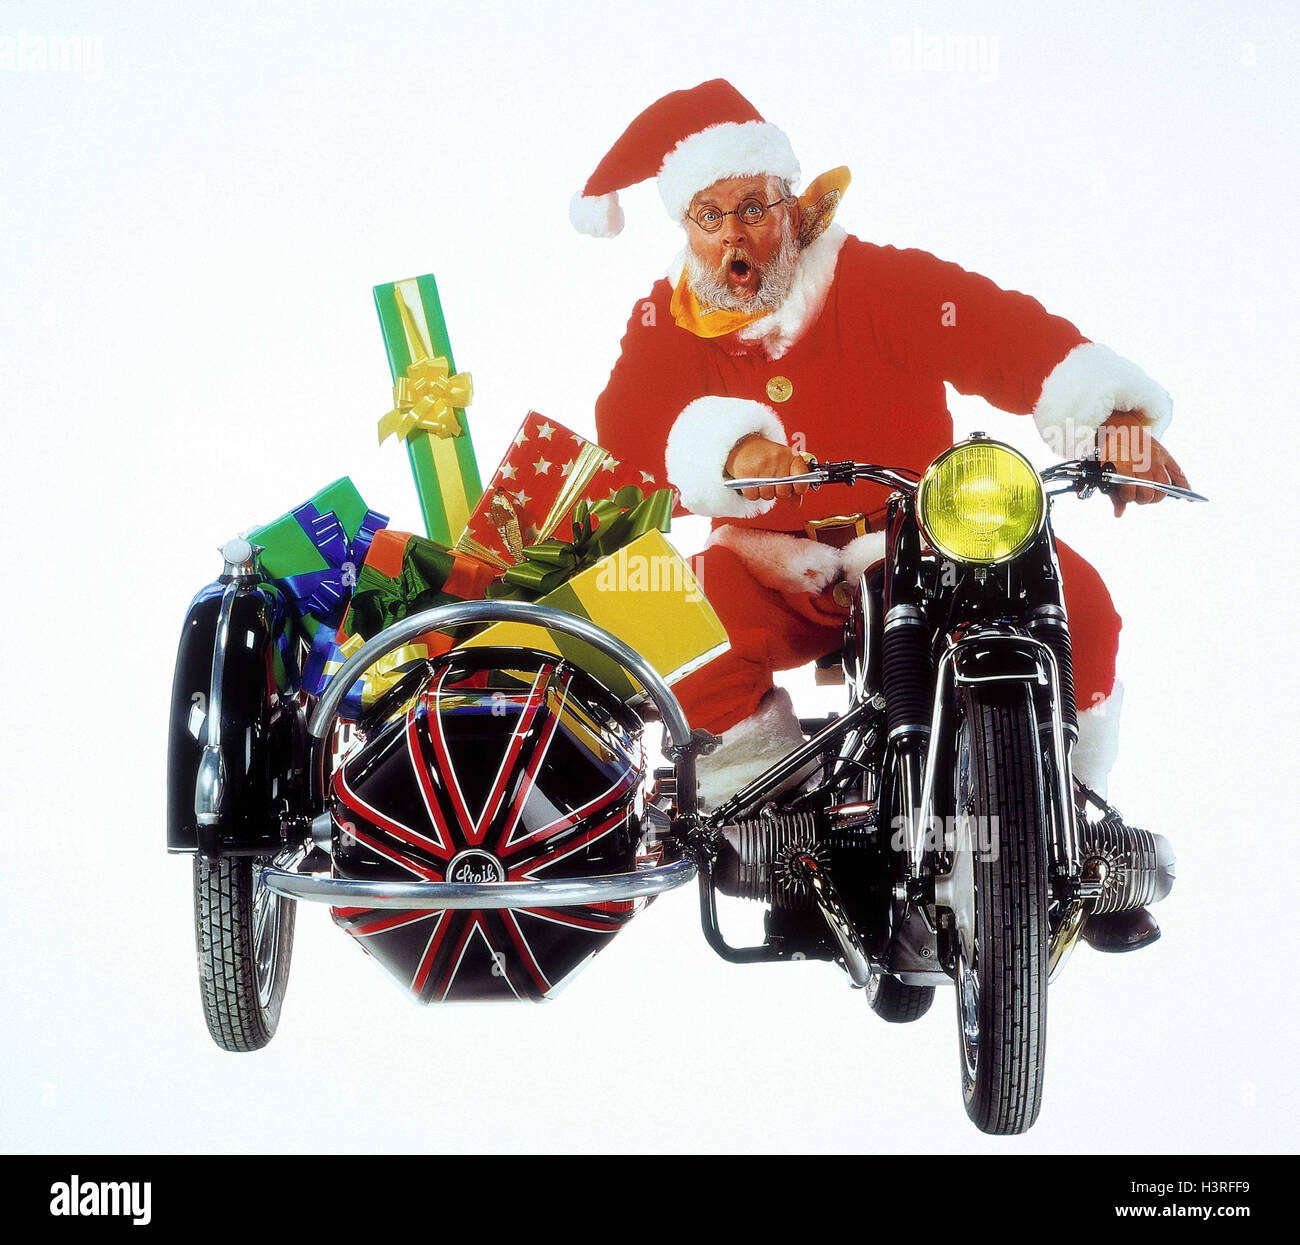 Santa Claus, moto, auto laterale presenta, per consegnare il Natale, distribuzione presenta, Santa, di guida di una motocicletta, sidecar, regali di Natale, offrire trasporti, gioco del viso, paura, studio, tagliate Foto Stock